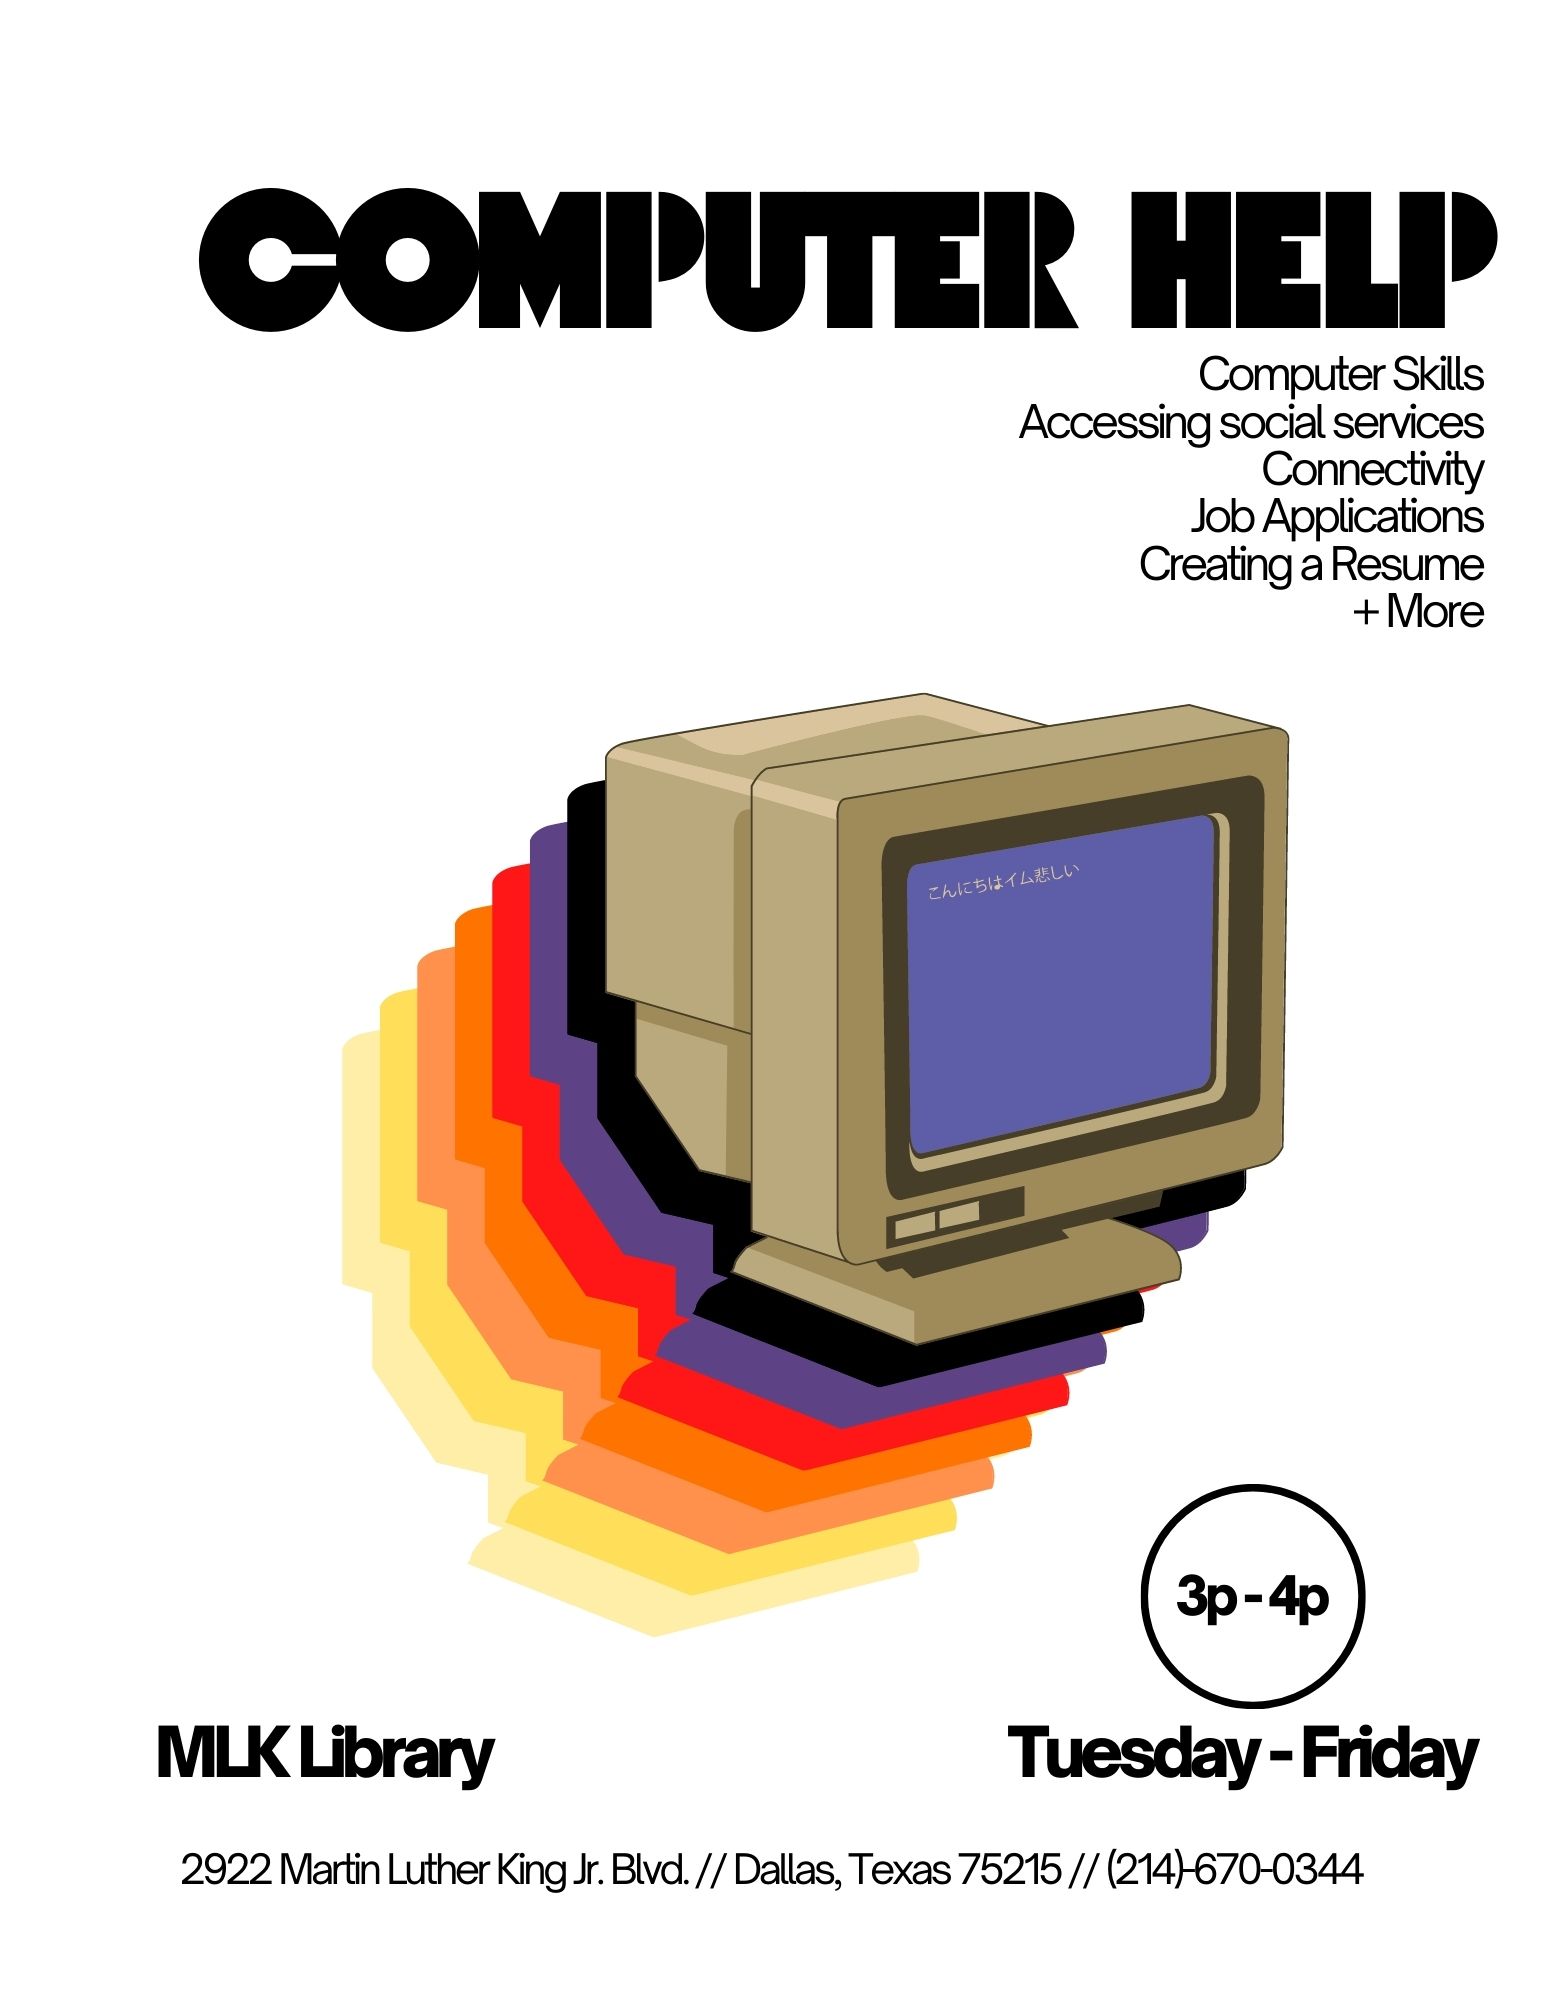 Computer Help flyer